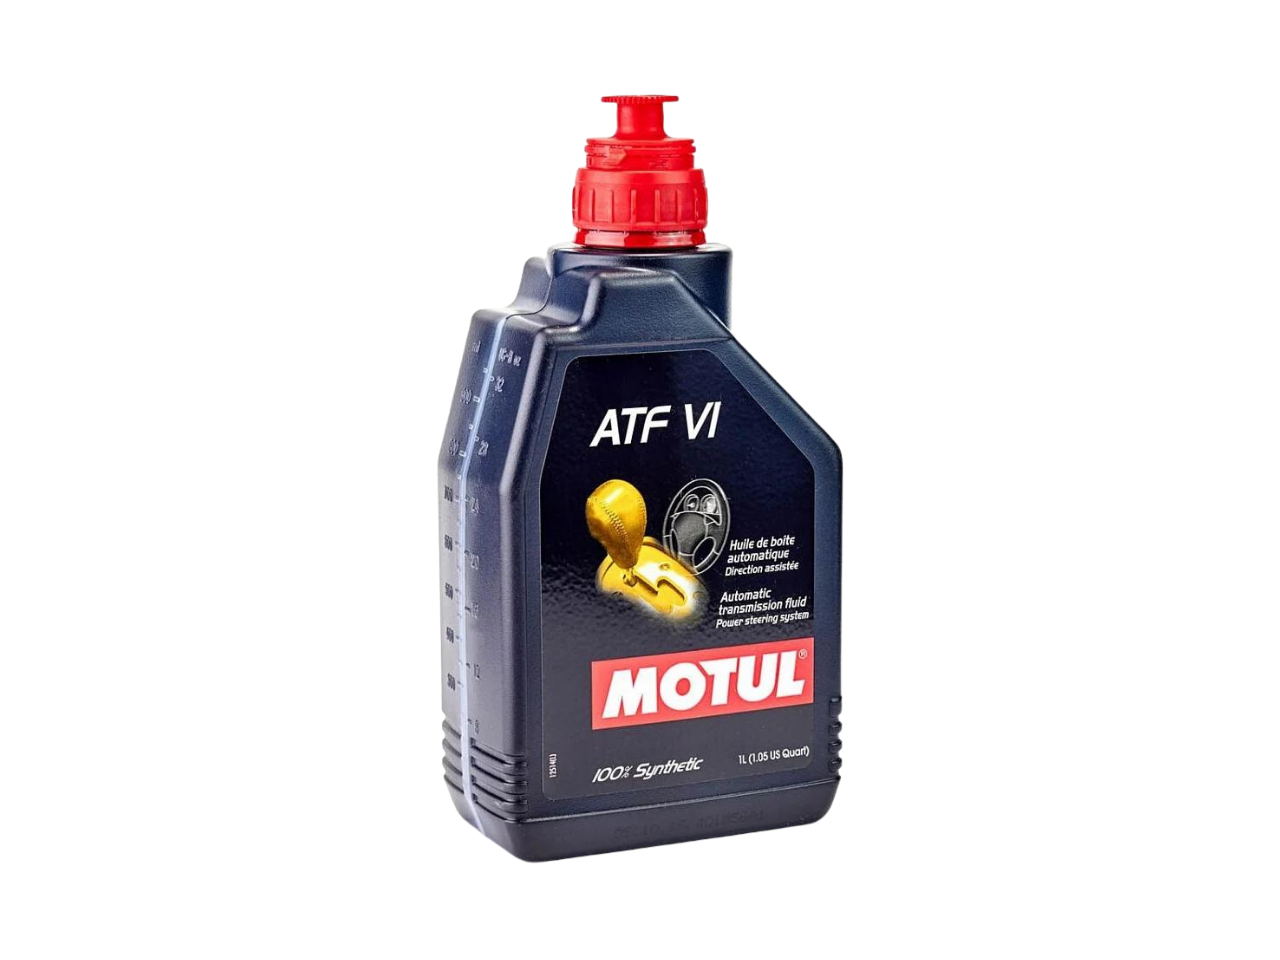 Купить недорого Трансмиссионное масло Motul ATF VI в Москве